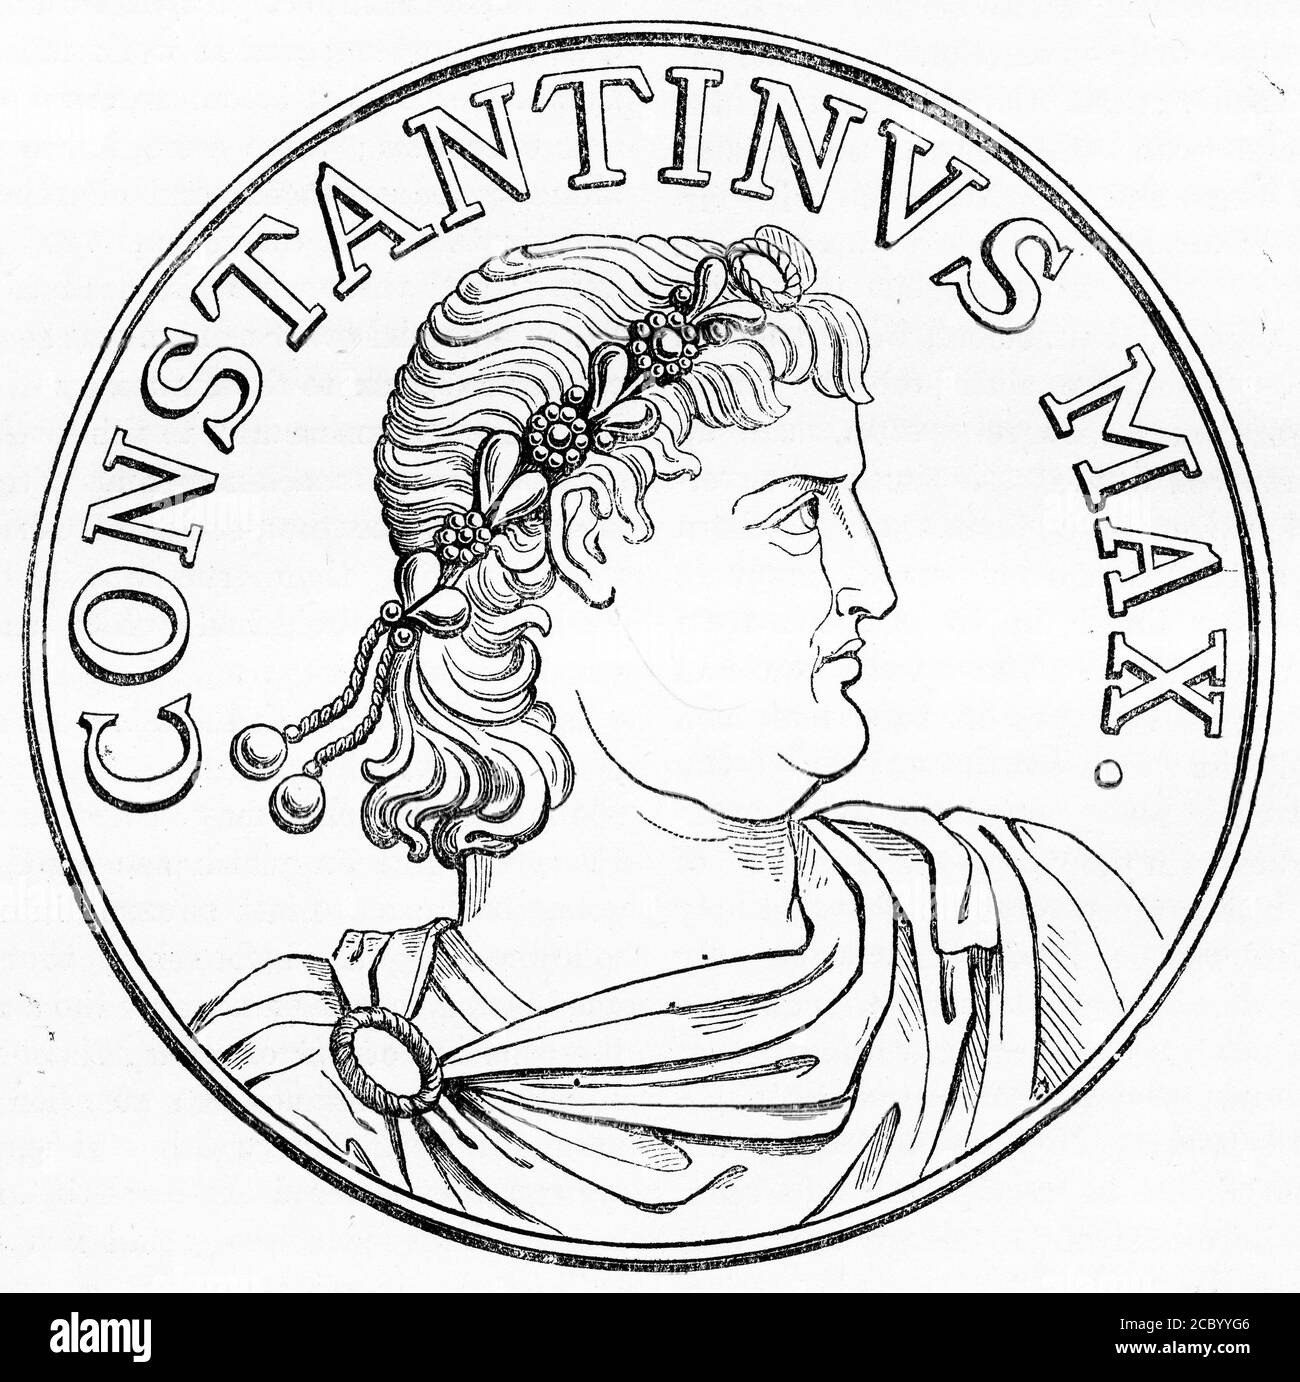 Eingraviert Porträt von Konstantin dem Großen (272 - 337), auch bekannt als Konstantin I., ein römischer Kaiser, der zwischen 306 und 337 n. Chr. herrschte. Stockfoto